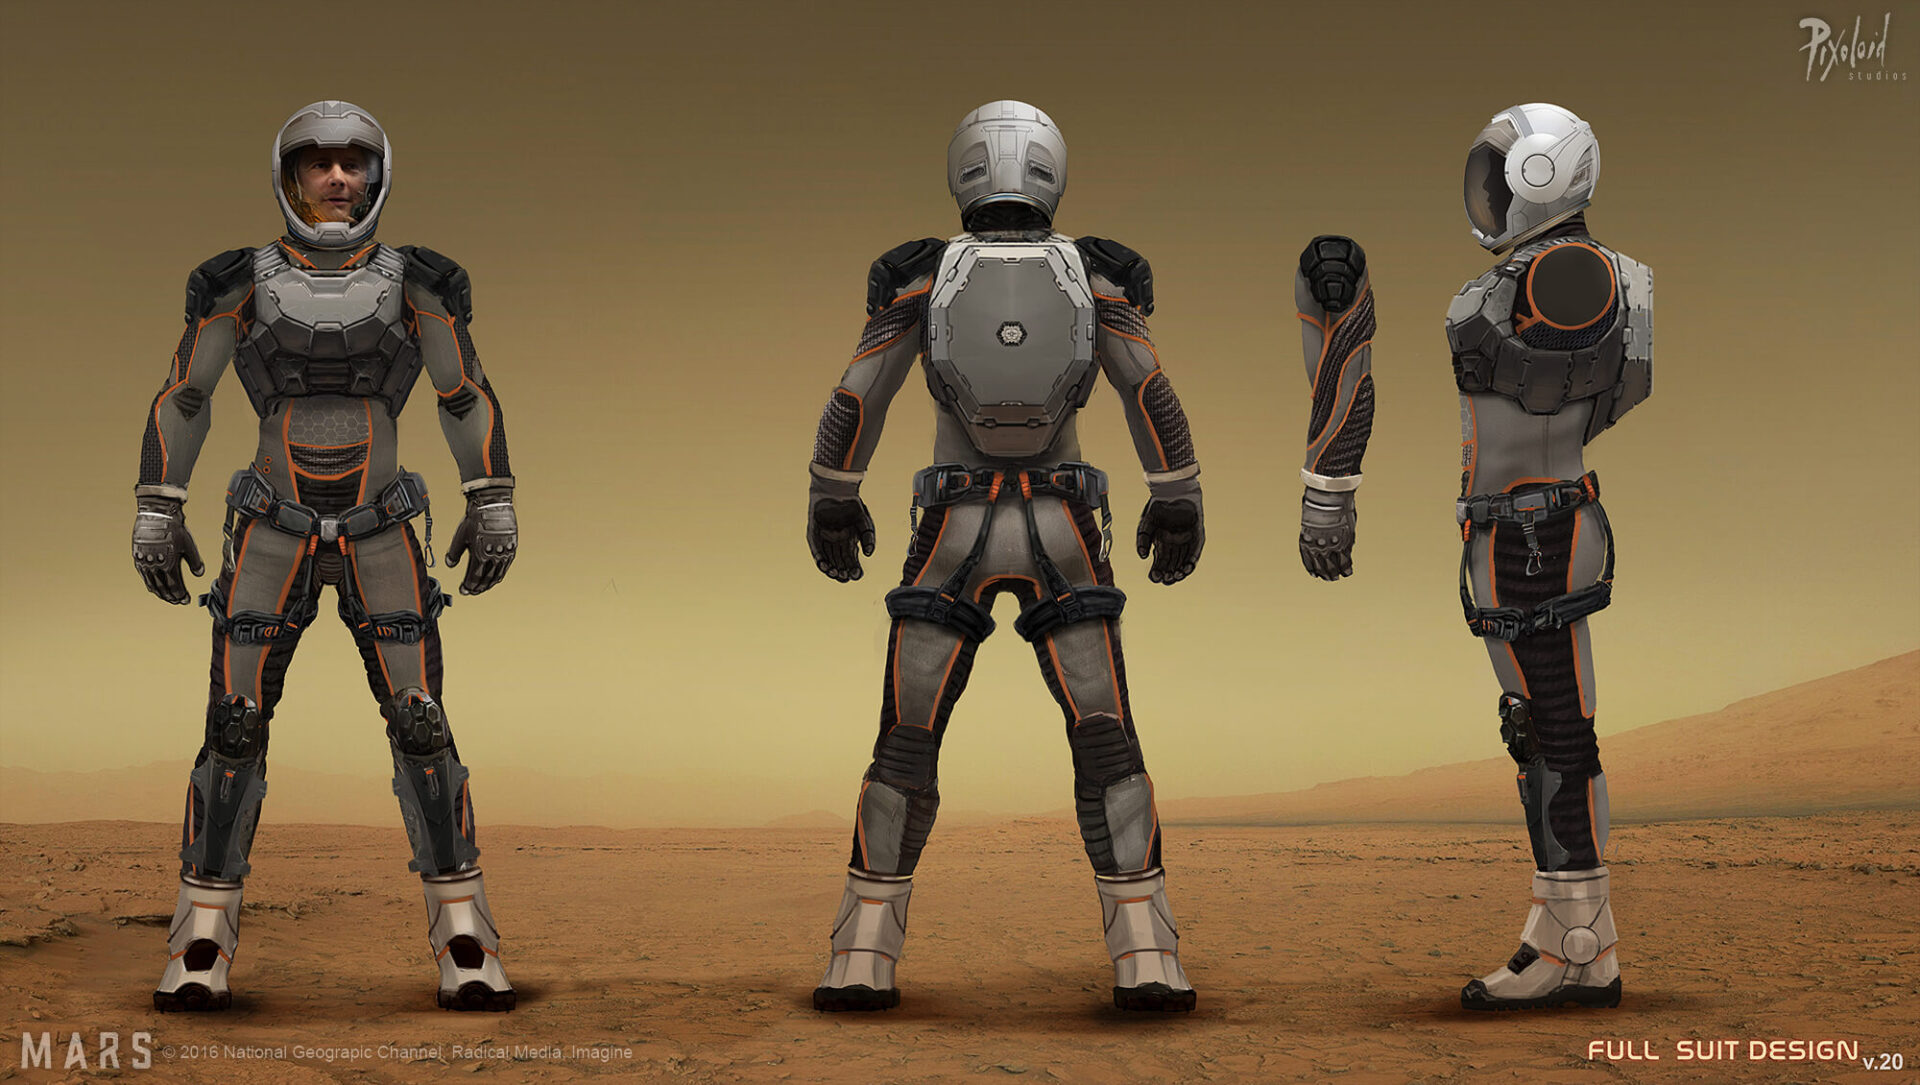 Mars space suit - costume design